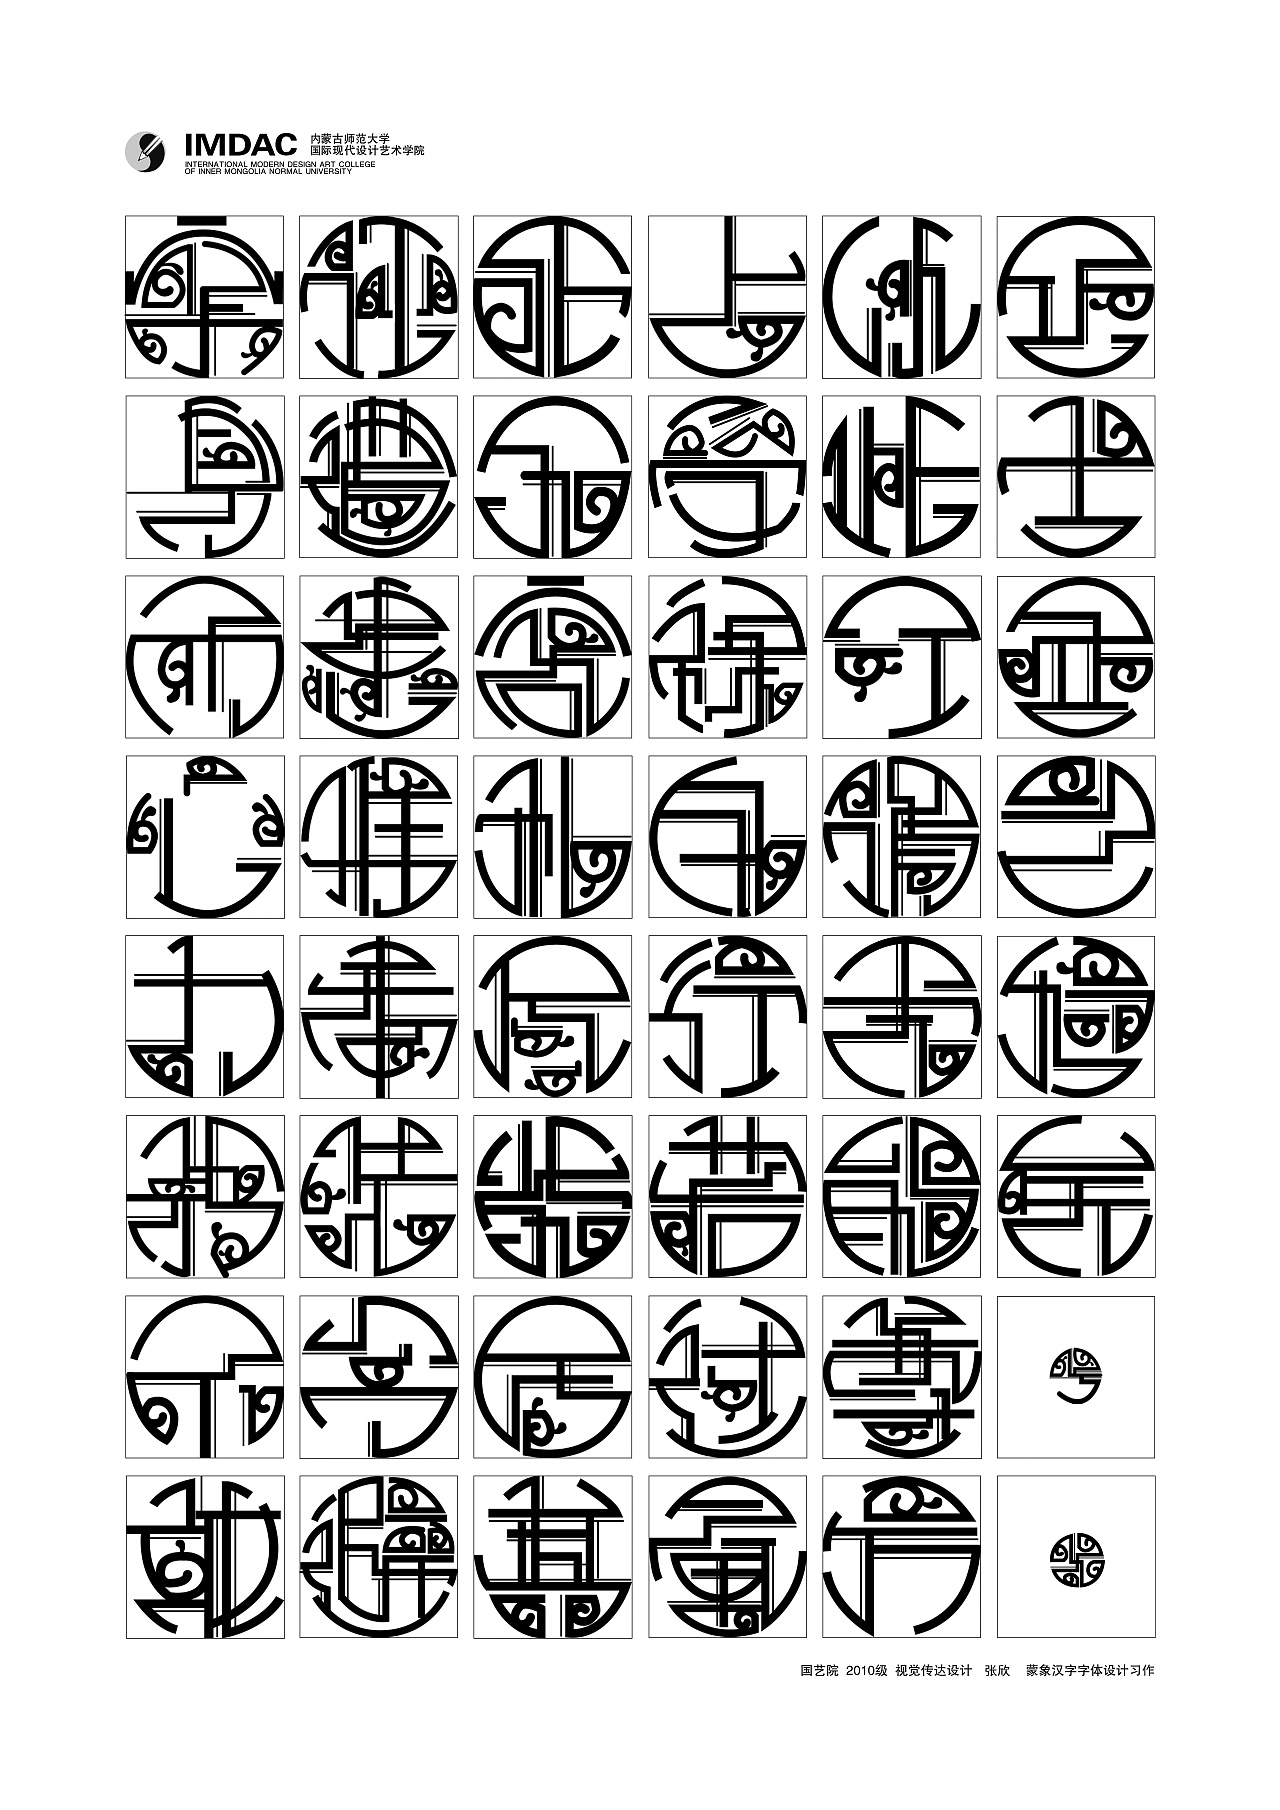 学校时期蒙象汉字的设计,结合蒙古吉祥纹样与汉字